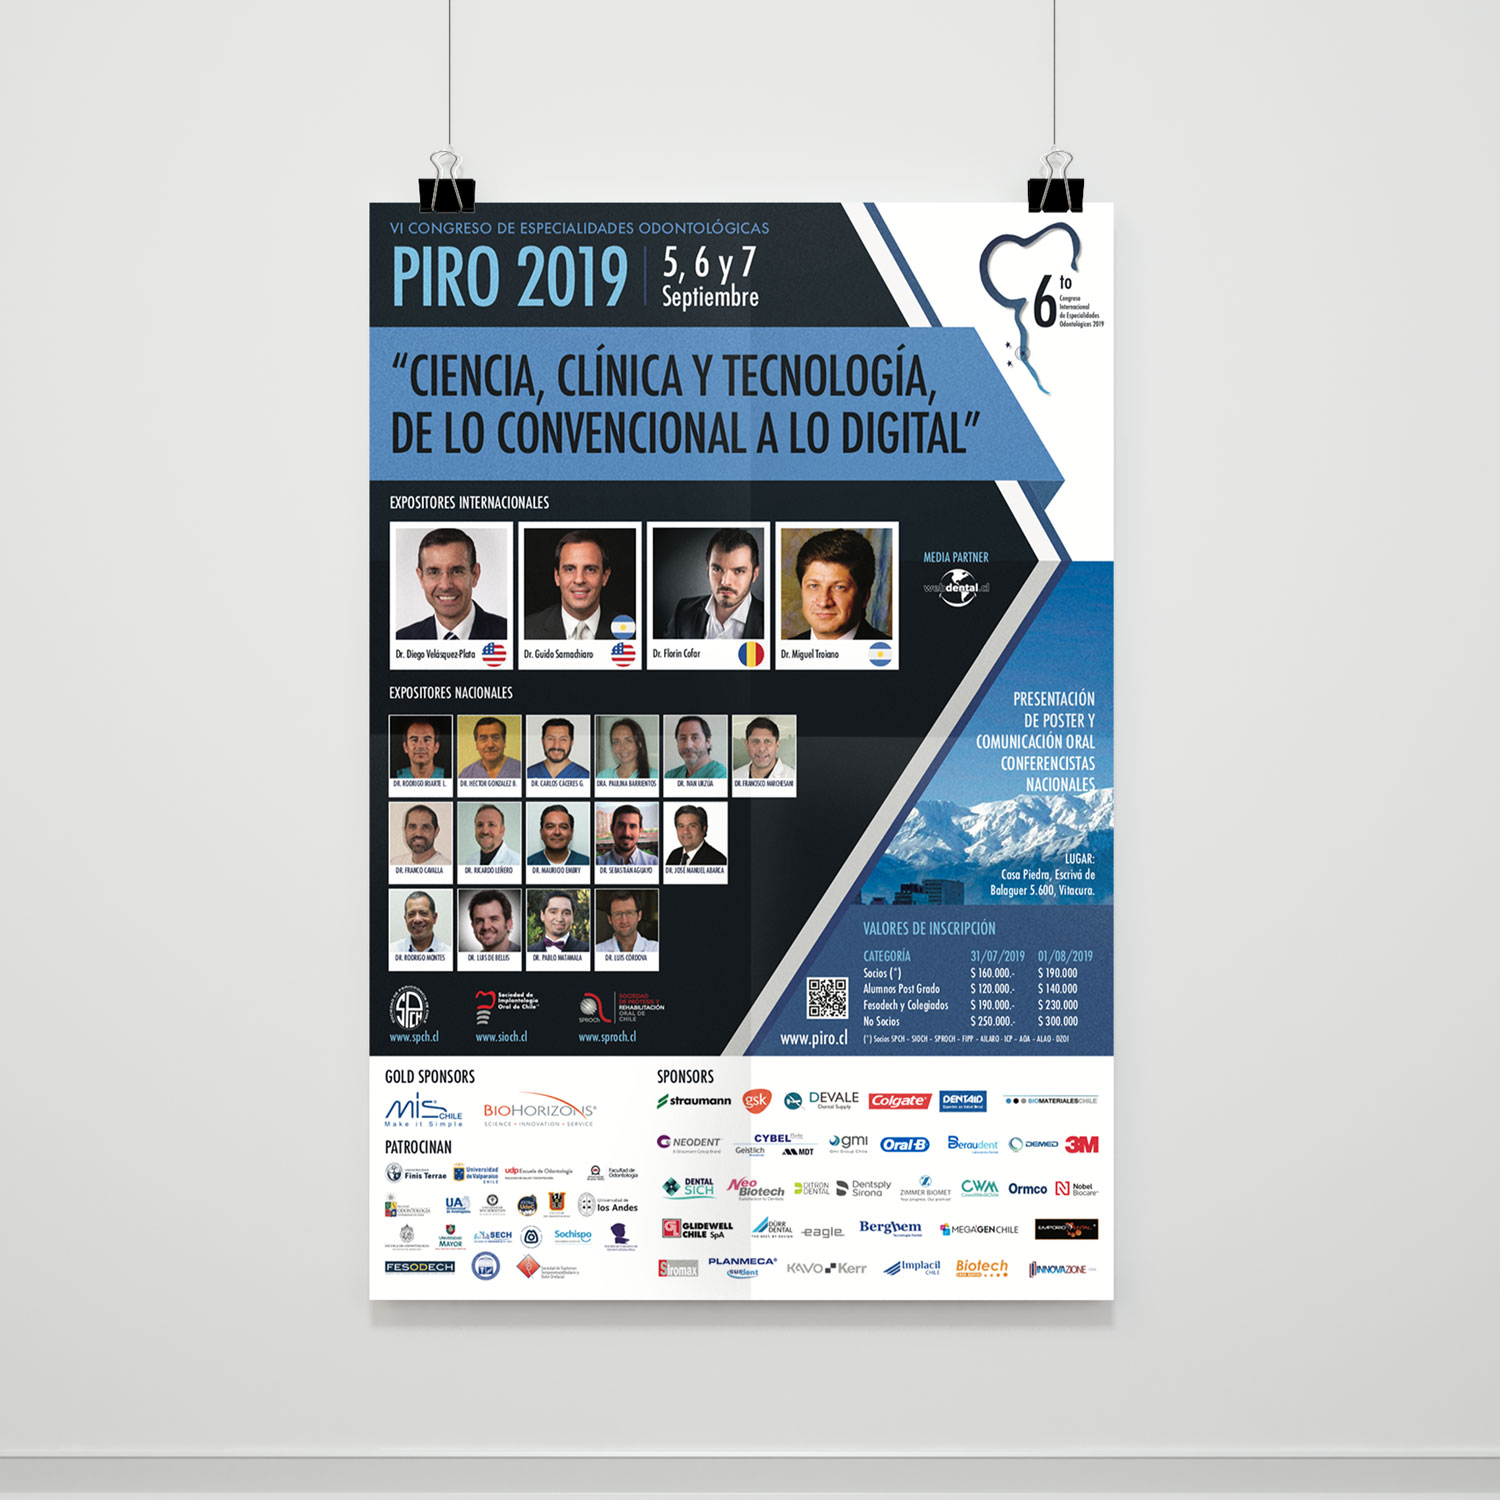 Poster “PIRO 2019”